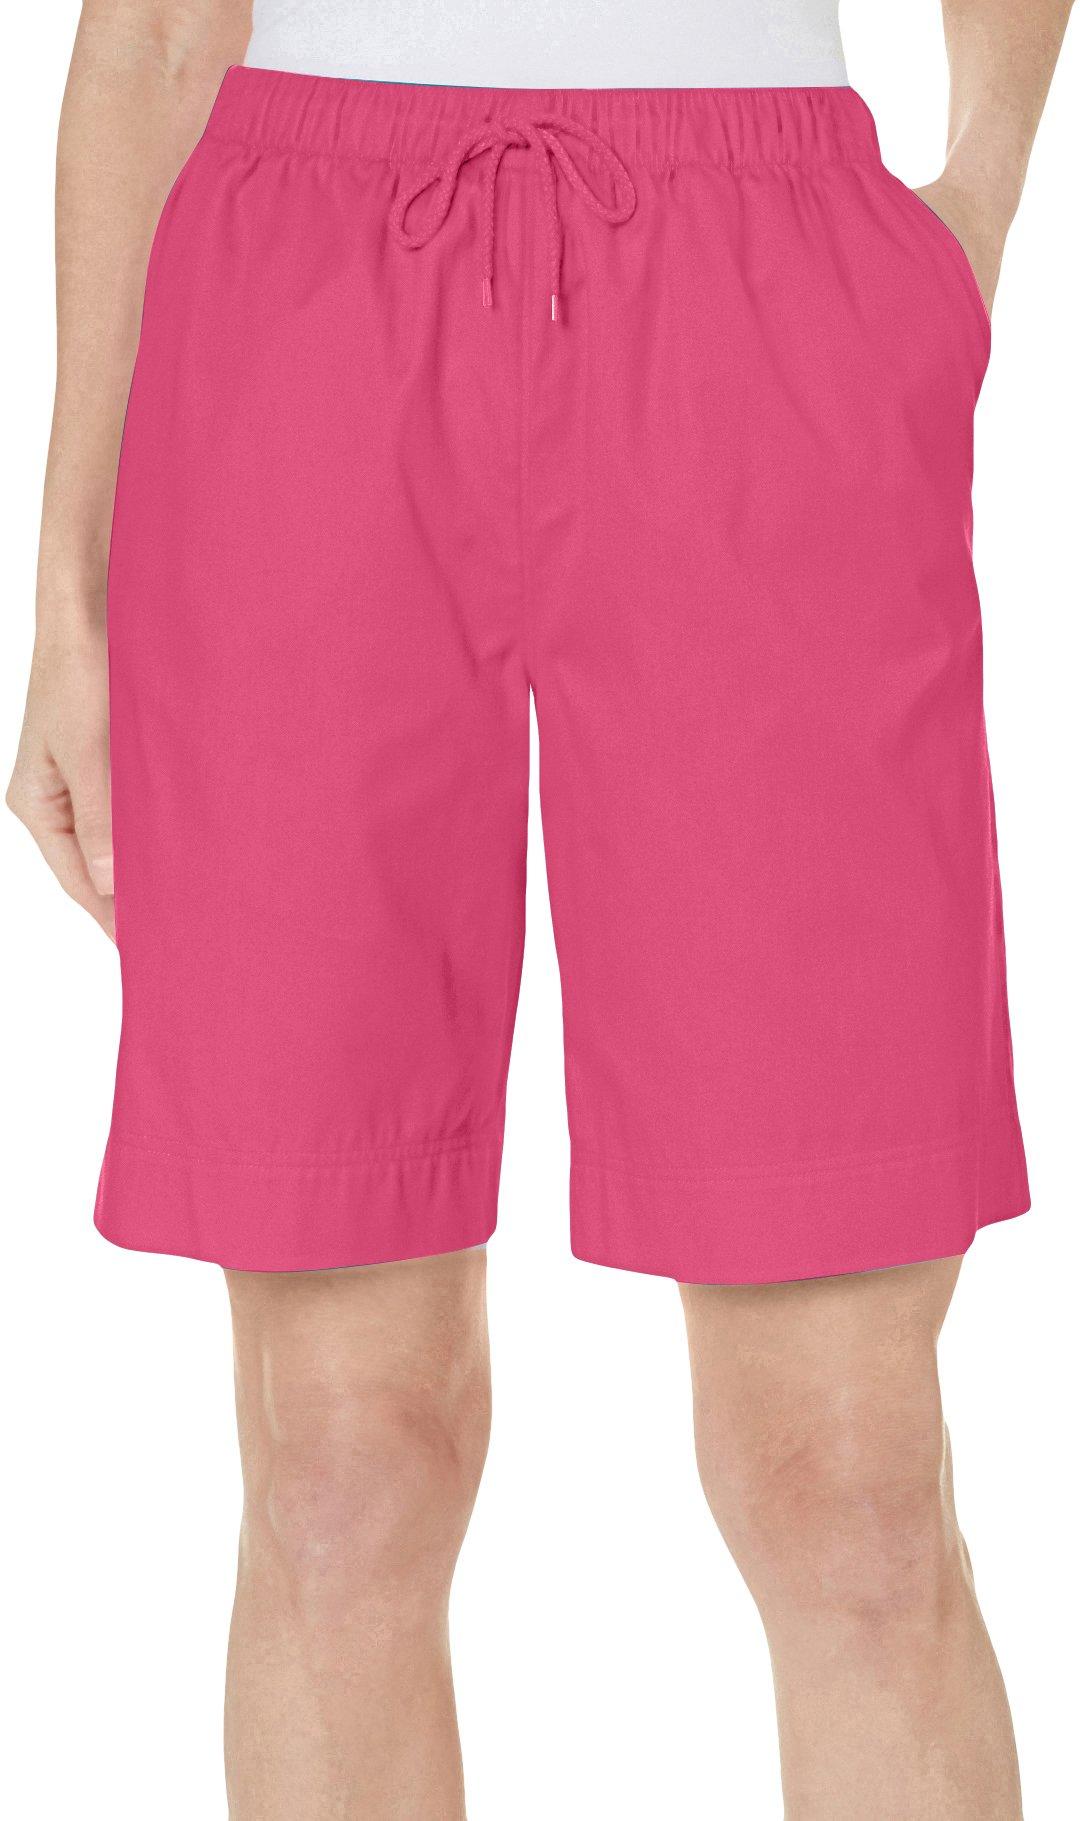 Coral Bay Elastic Waist Shorts | Bealls Florida